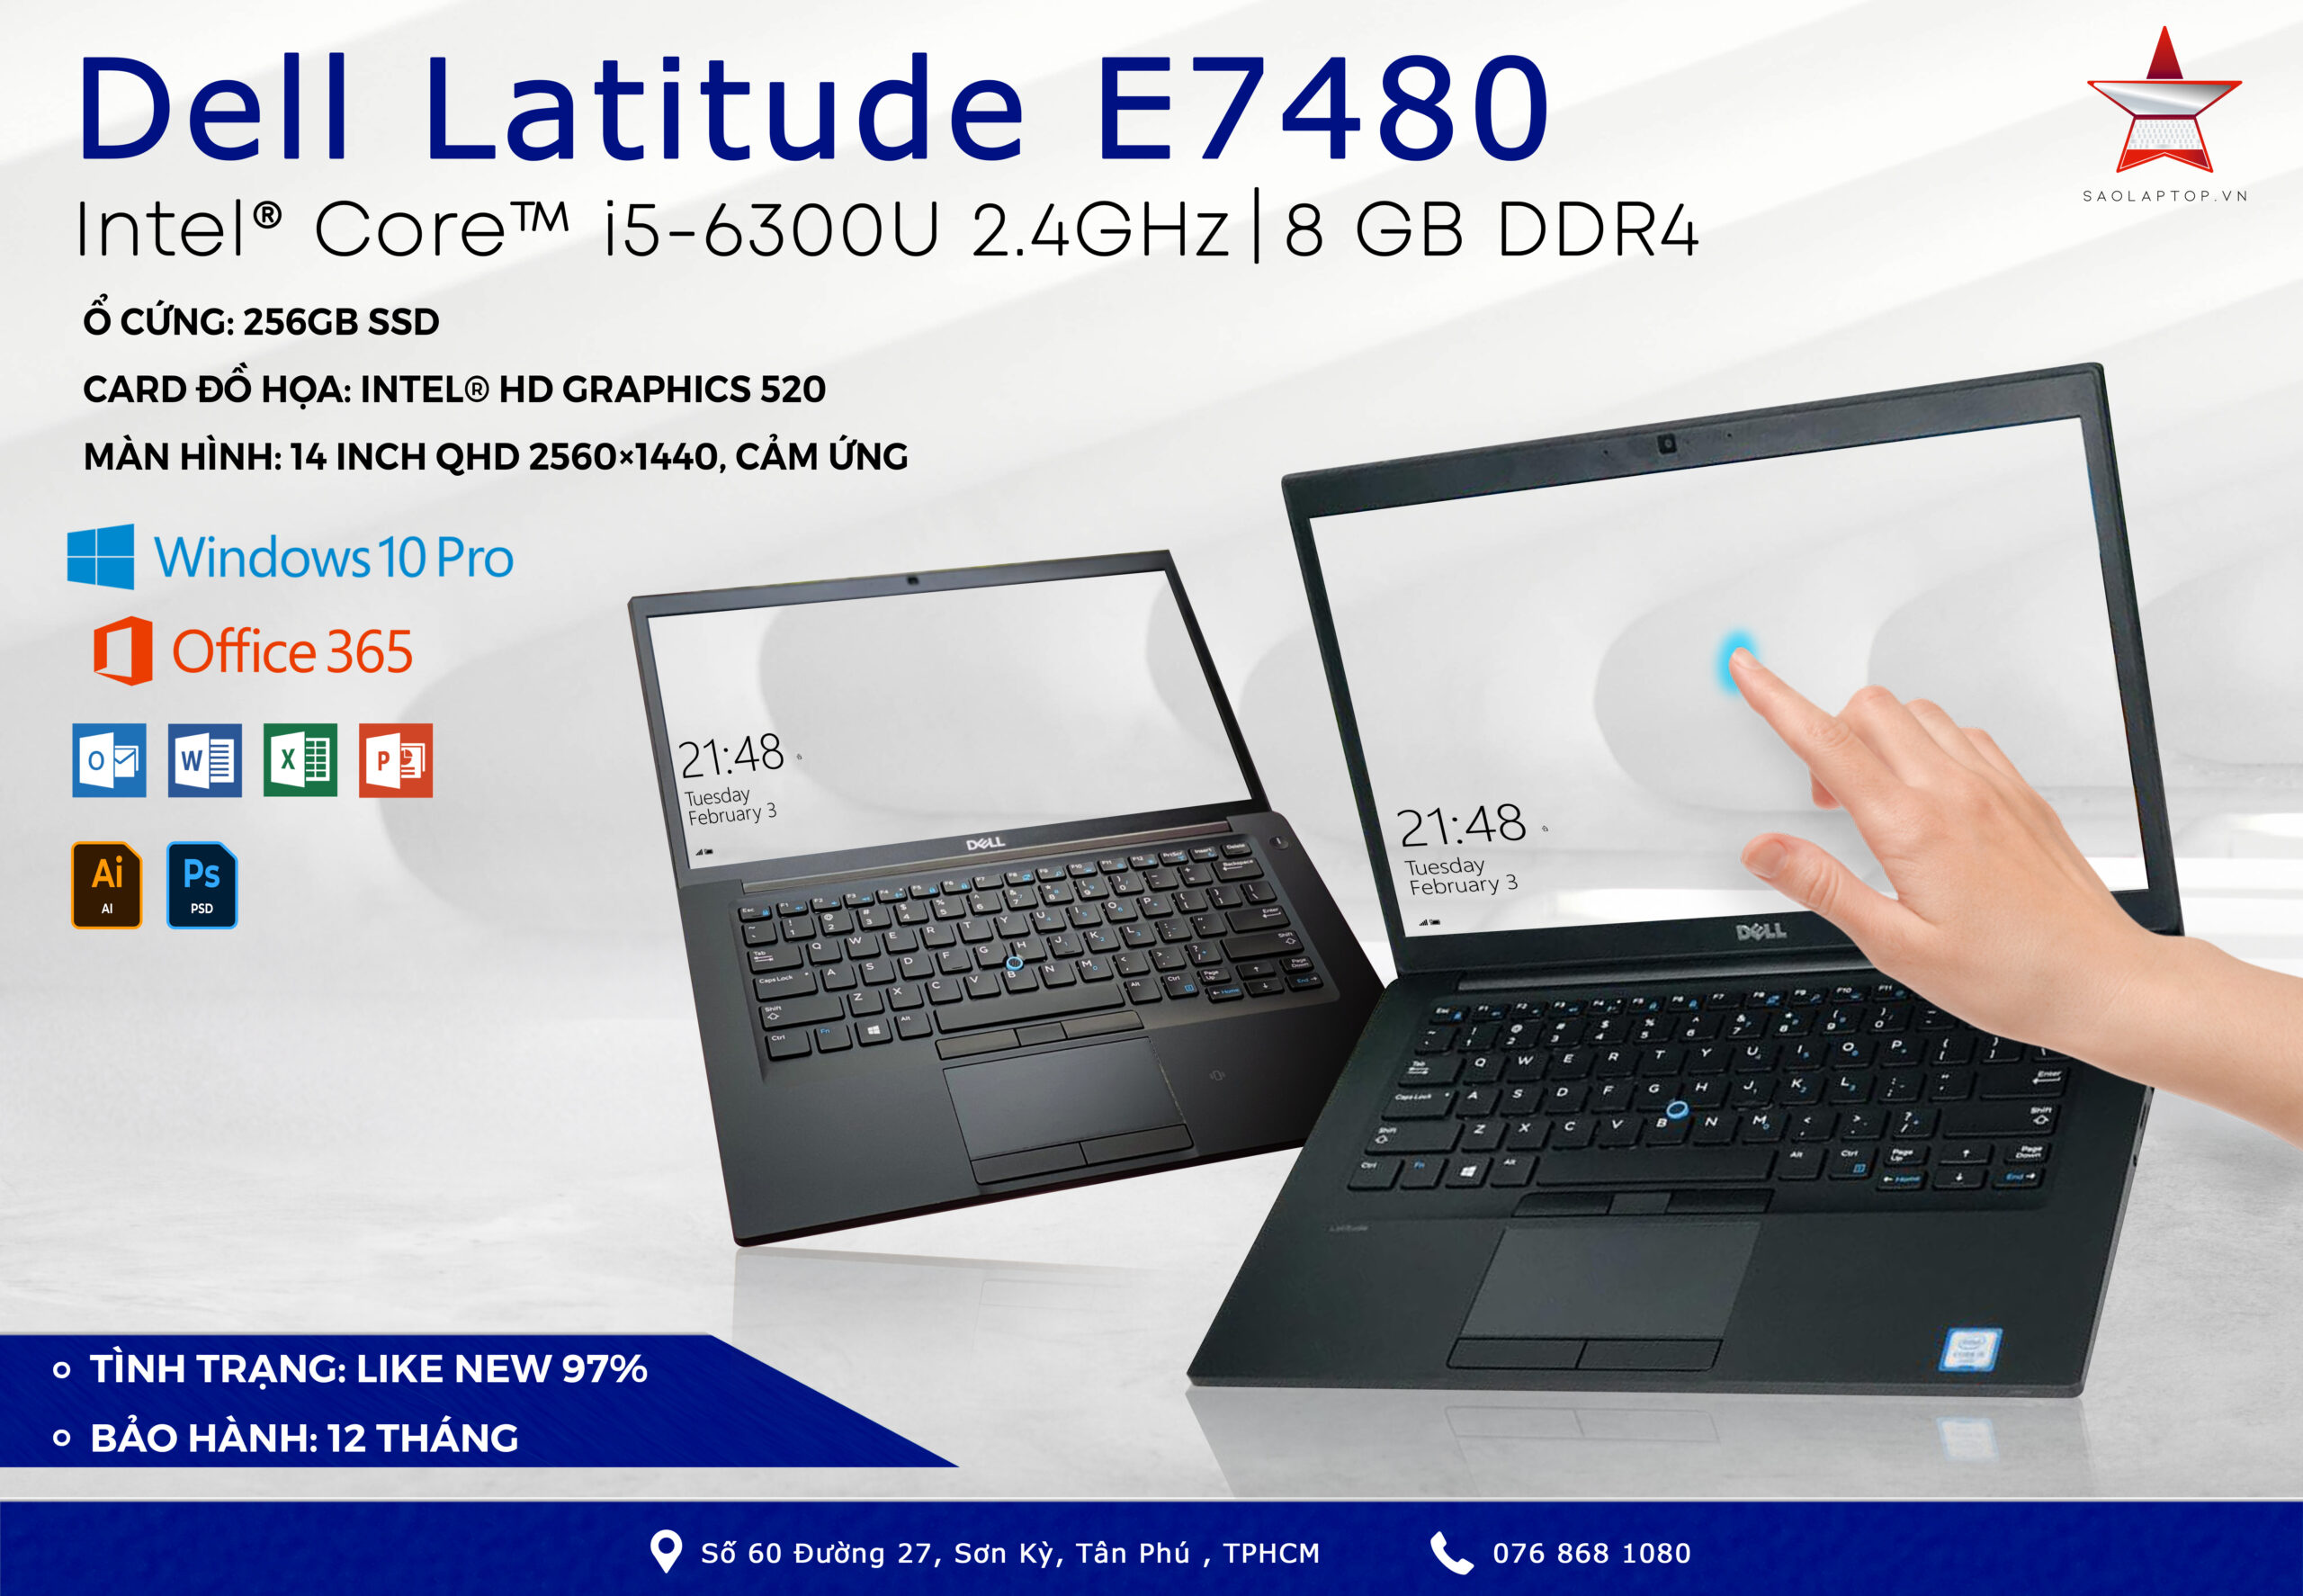 Dell Latitude E7480 – Core I5 6300u, Ram 8gb, Ssd 256gb, 14 Inch Qhd Touch